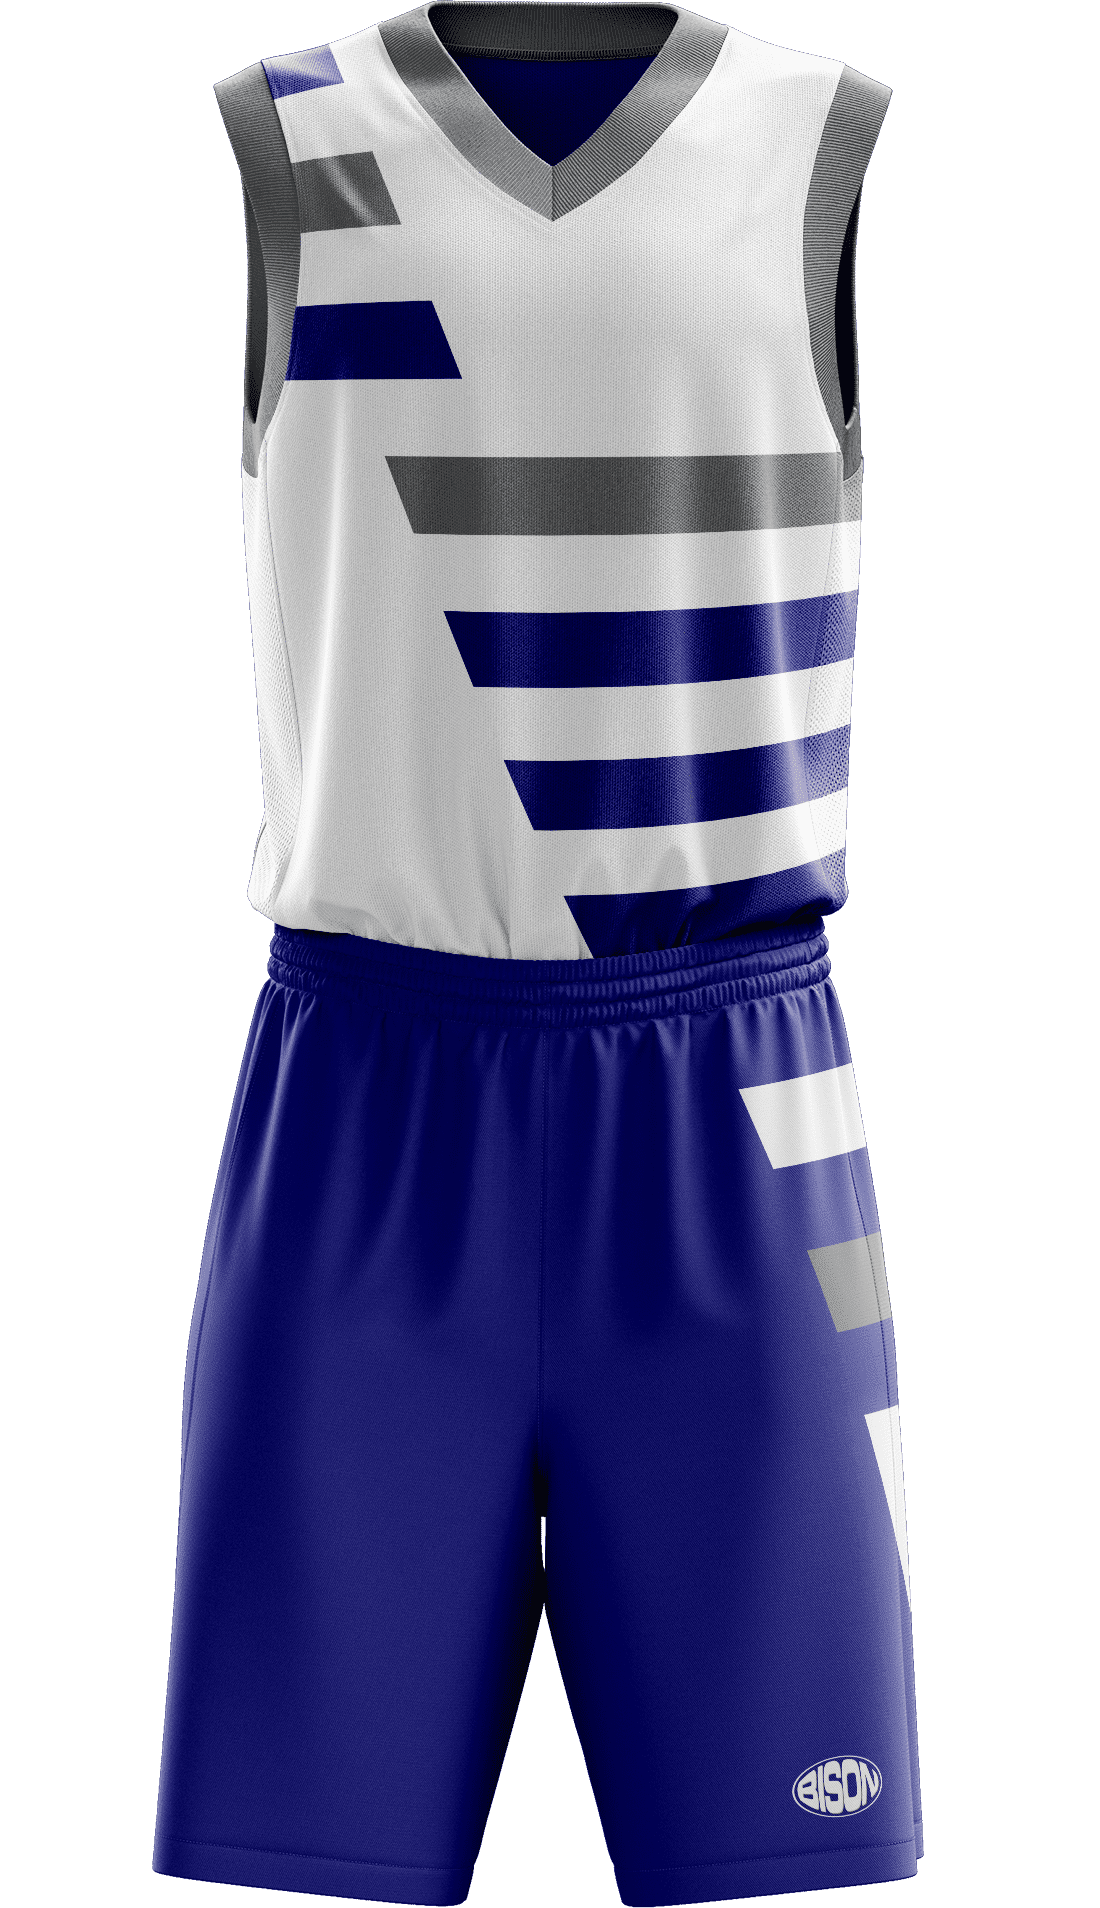 basketball jersey short